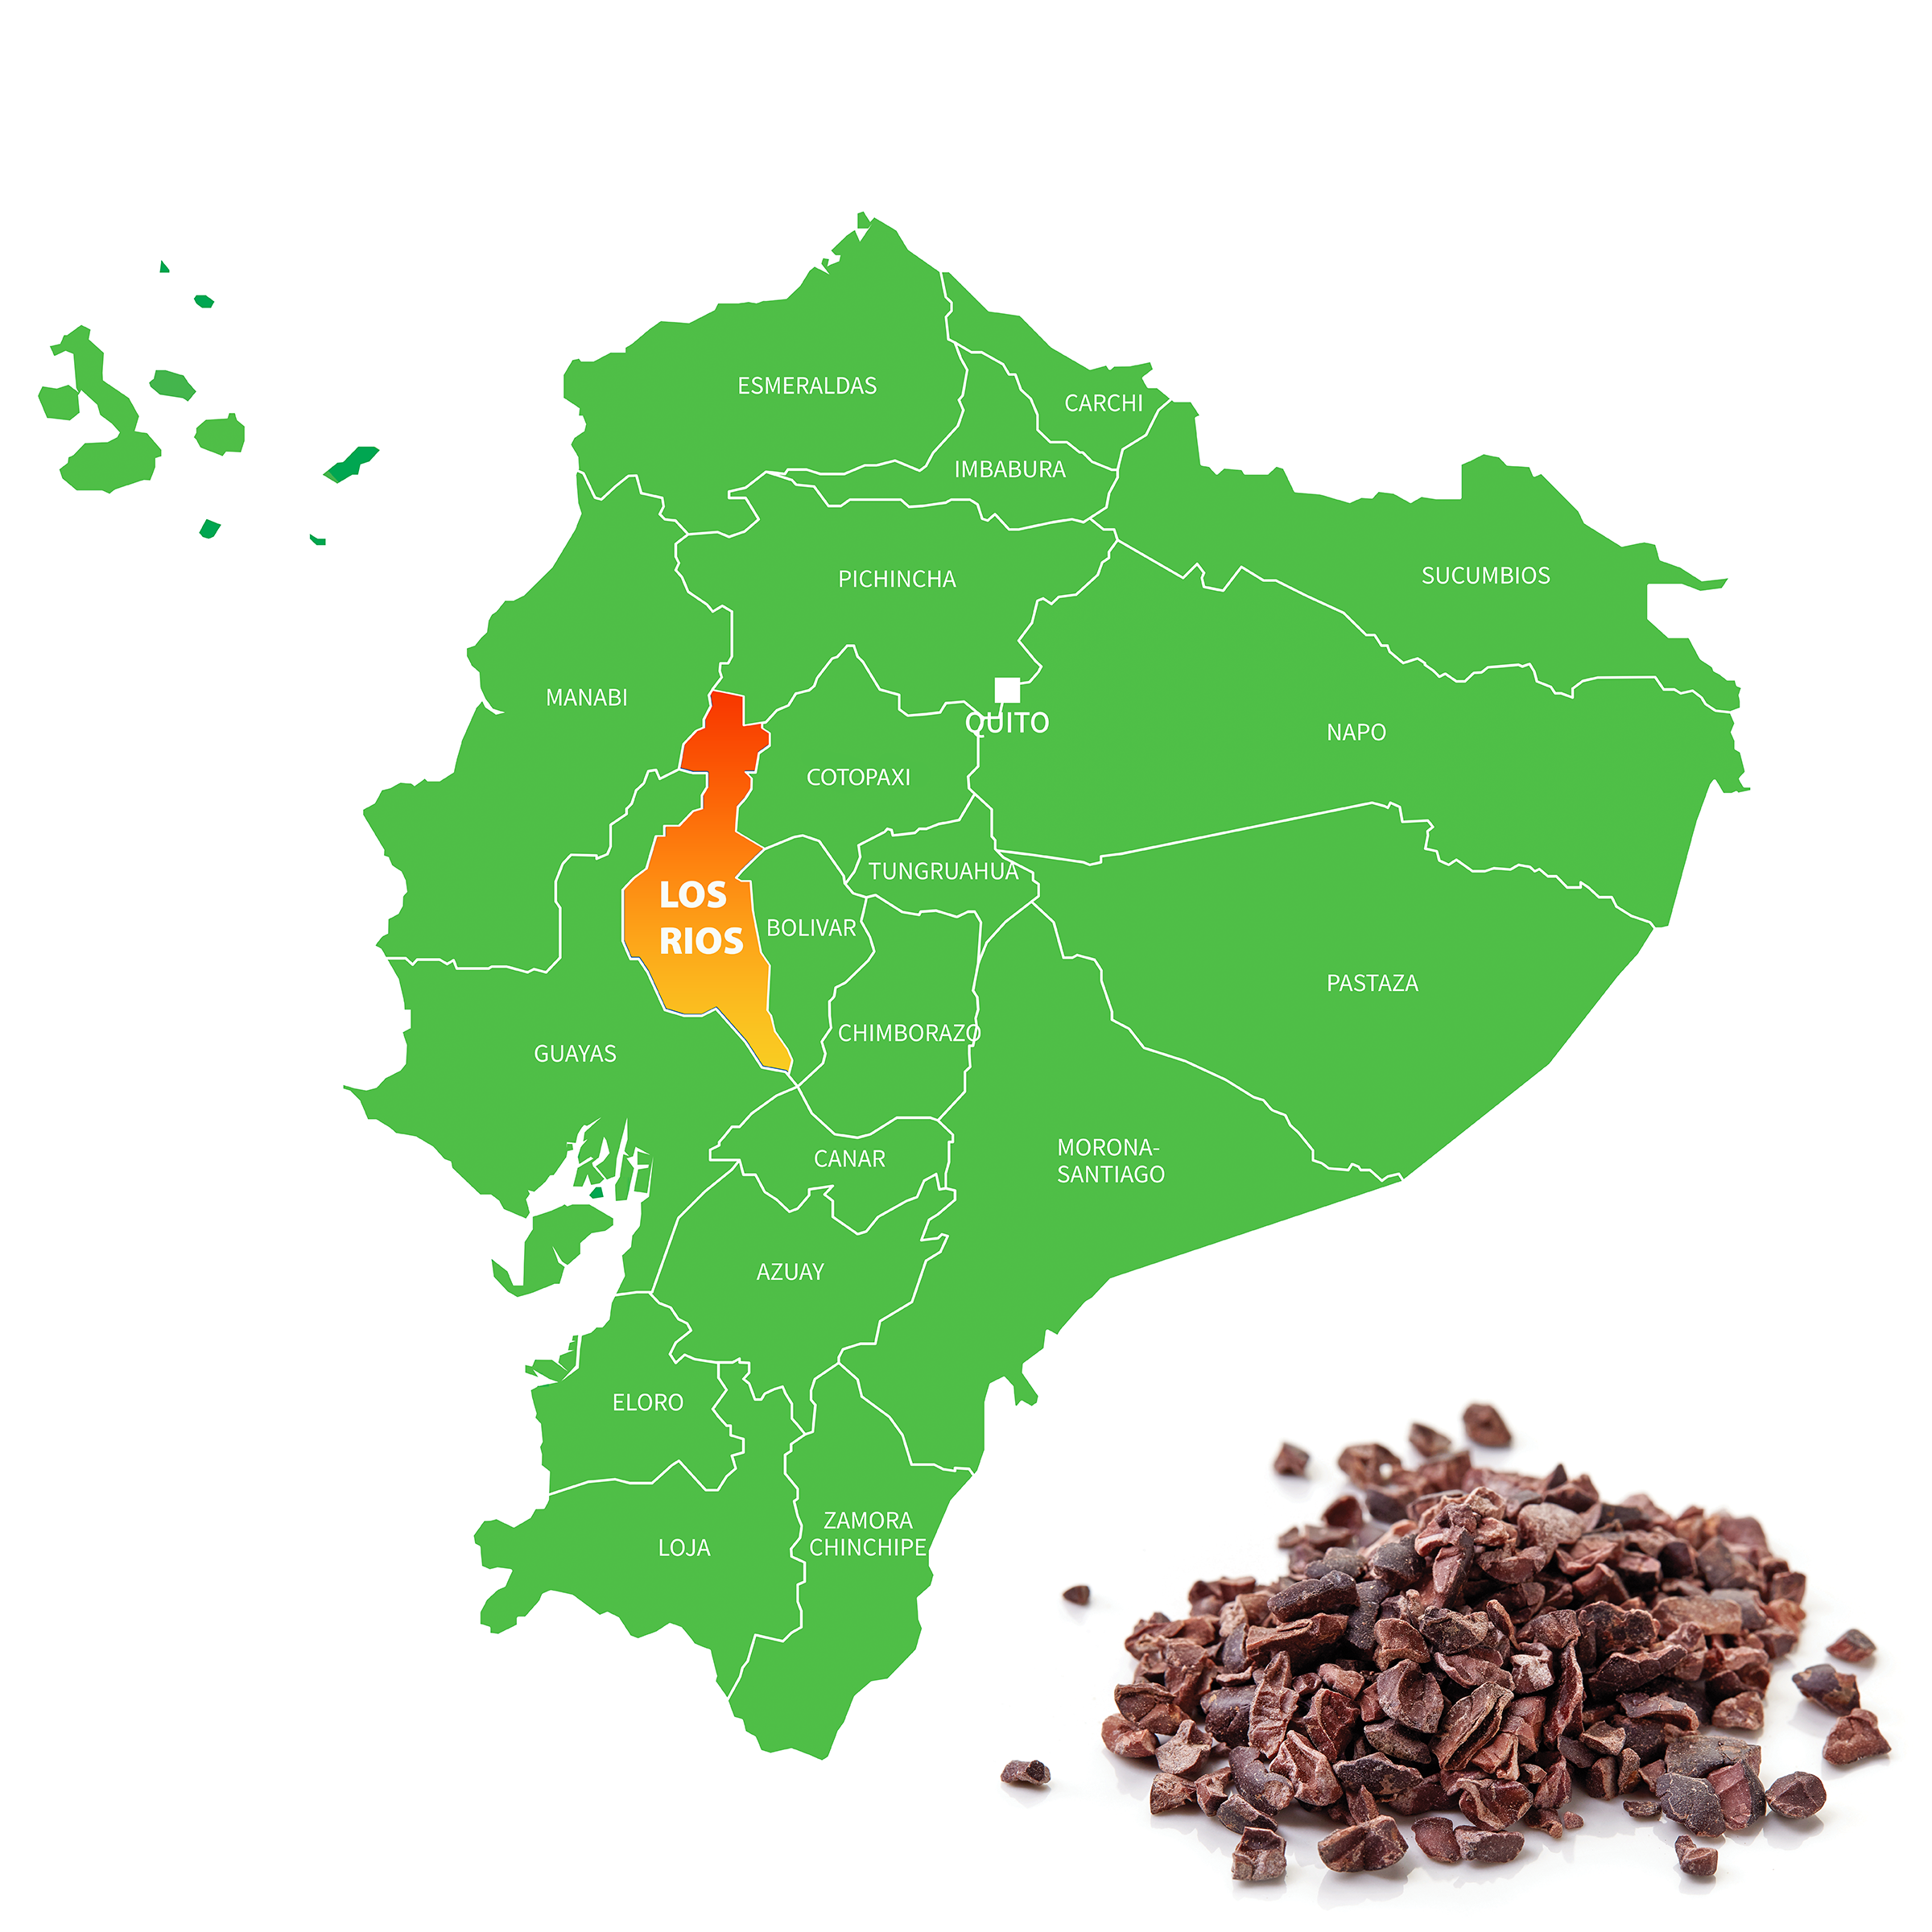 ECUADOR LOS RIOS